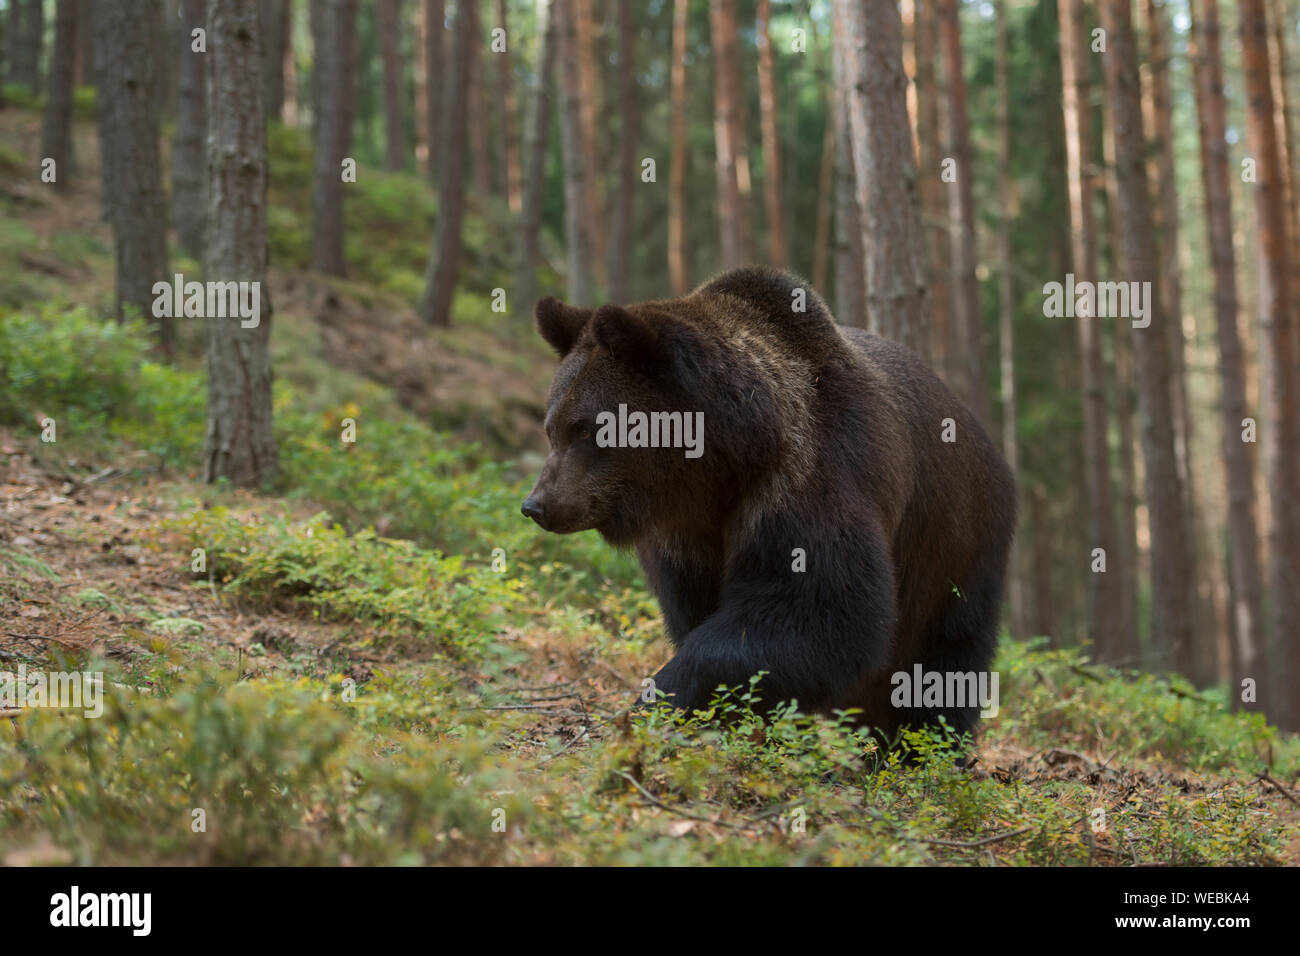 Ours brun européen Europaeischer / Braunbaer ( Ursus arctos ) marche en montée à travers une forêt, en milieu naturel. Banque D'Images